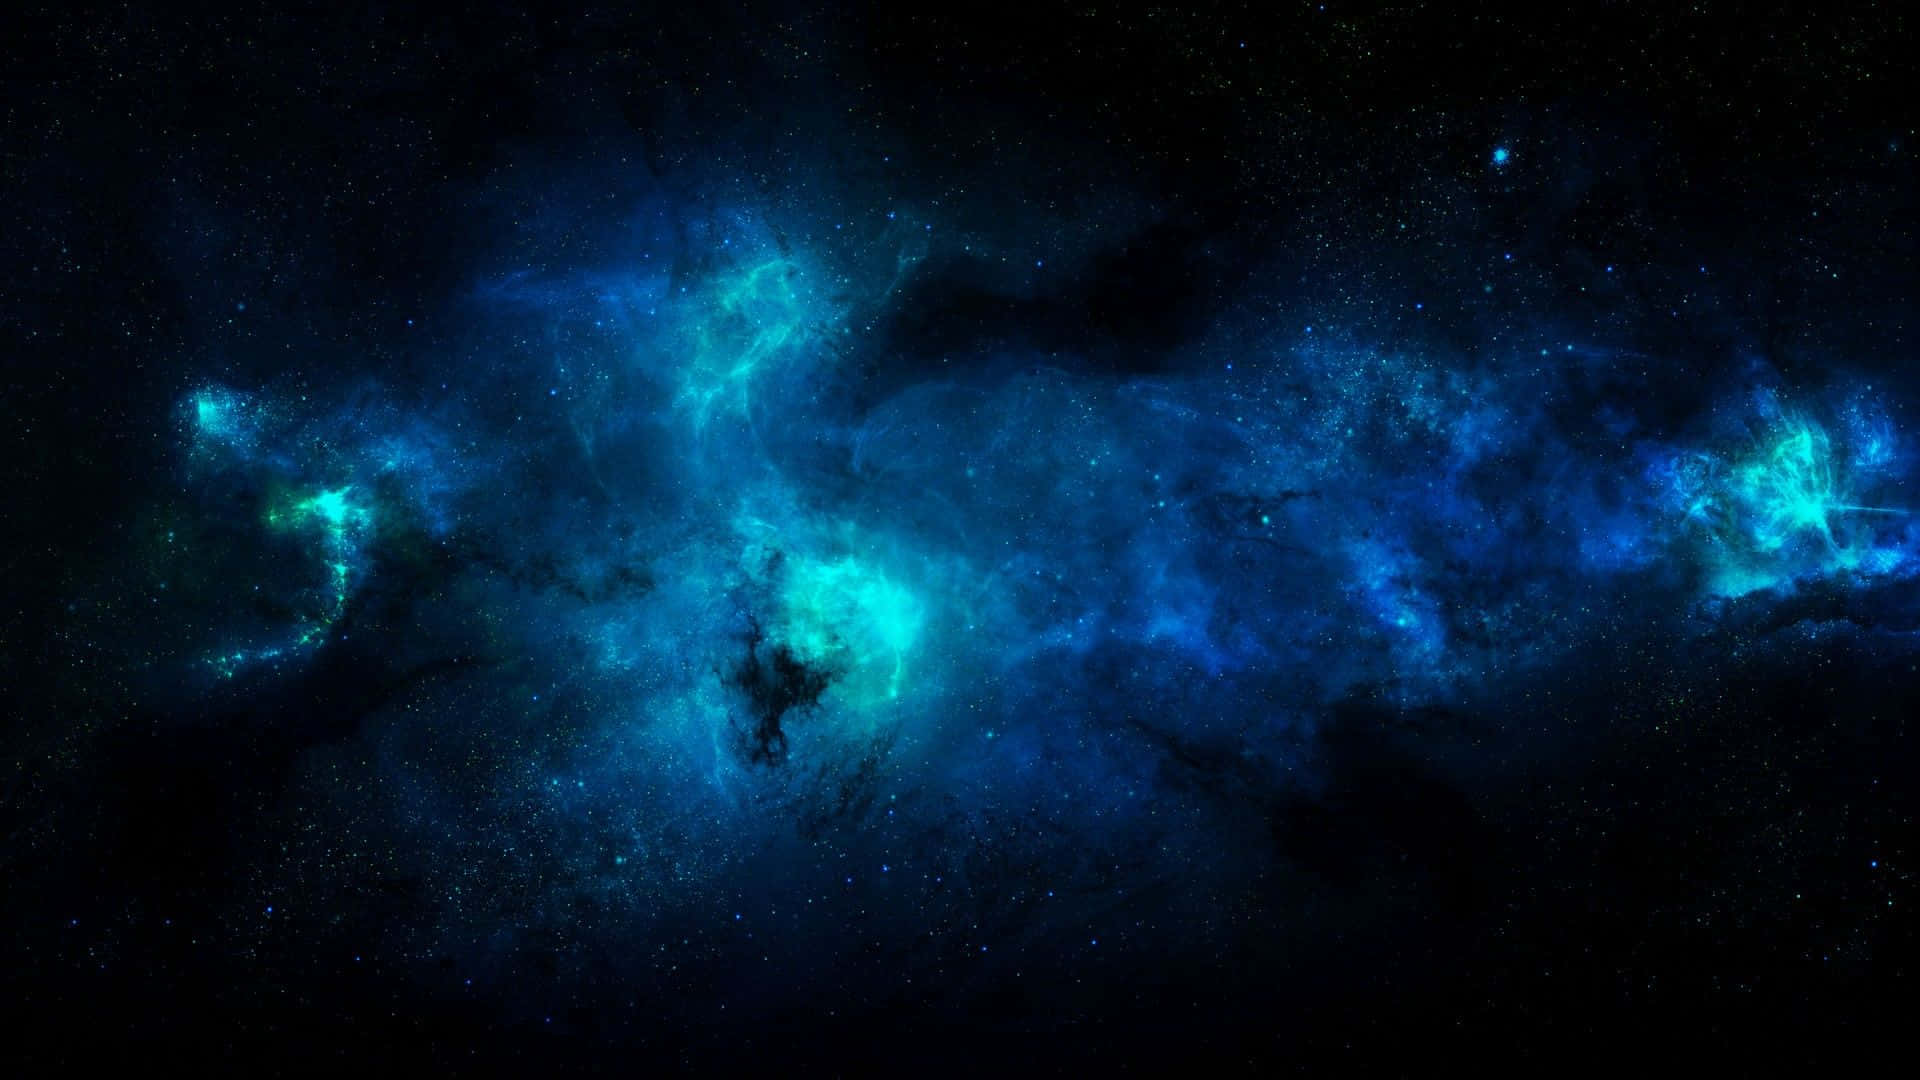 Et ensomt udtryk for skønhed og fred, vil Cool Blue Galaxy sikkert transportere dig til et andet univers. Wallpaper